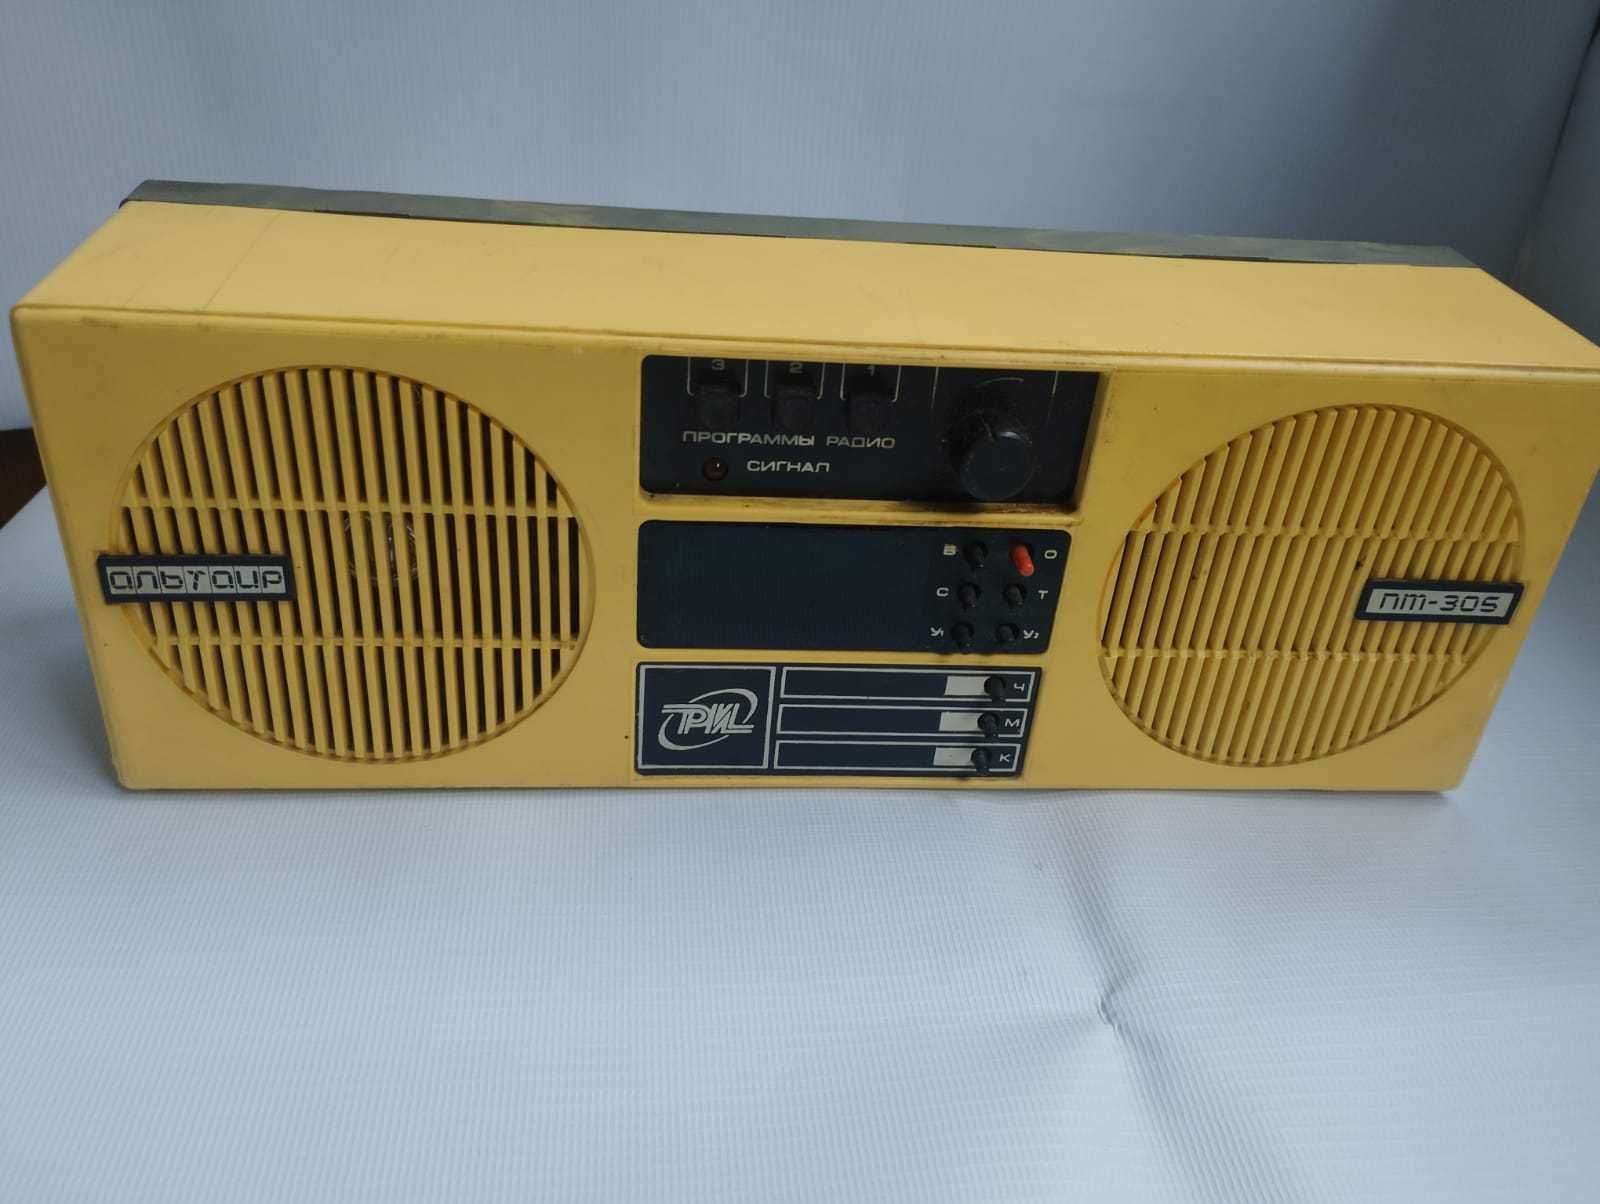 Радиоприемник трехпрограмный Альтаир ПТ-305 (1994 г.) c радиоточкой.